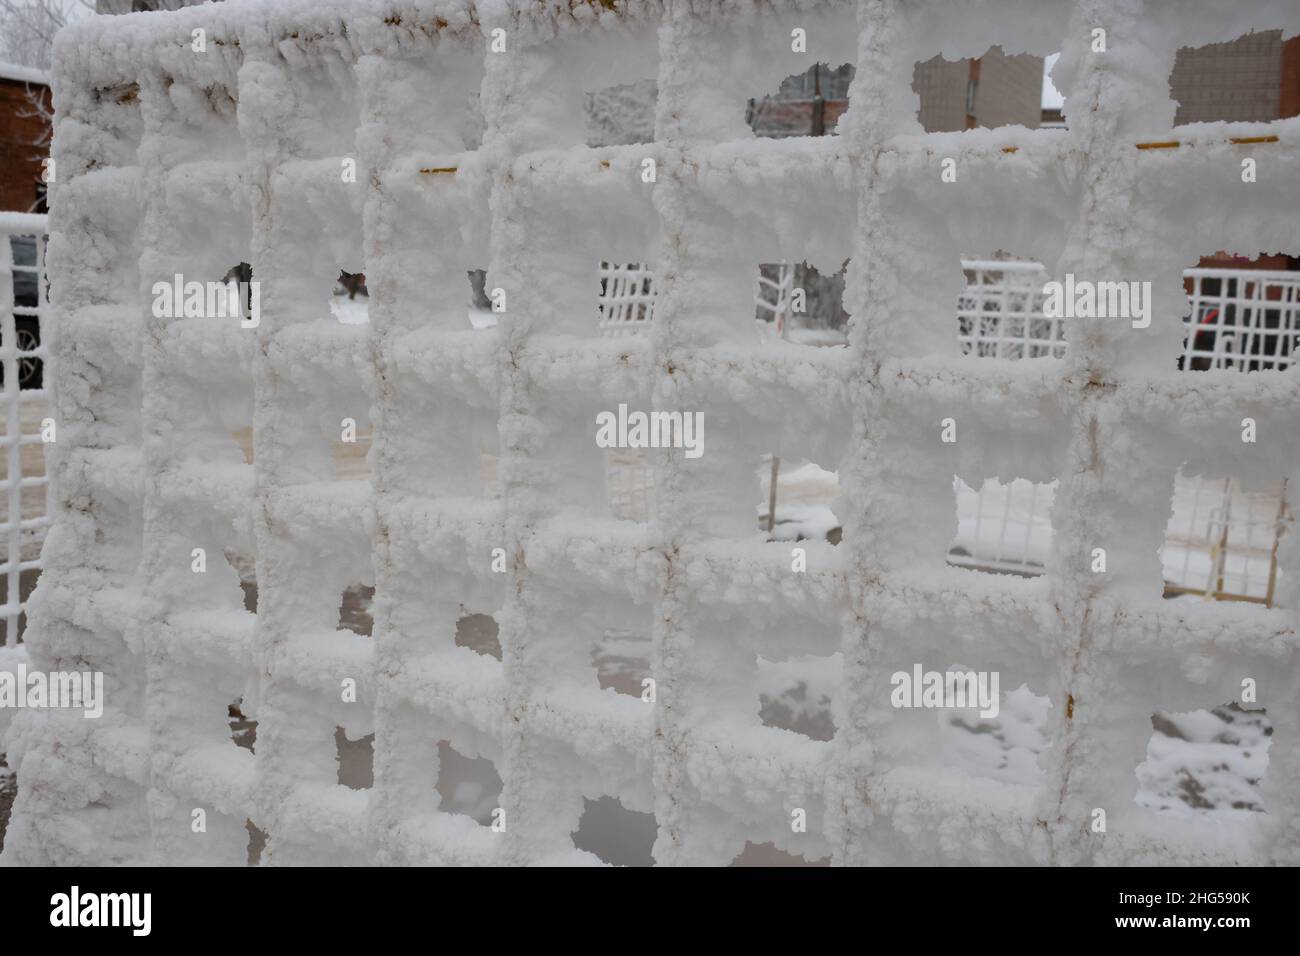 La grille de clôture est parsemée de cristaux de givre, de flocons de neige.Hiver fond gelé et enneigé.Journée mondiale de la neige. Banque D'Images